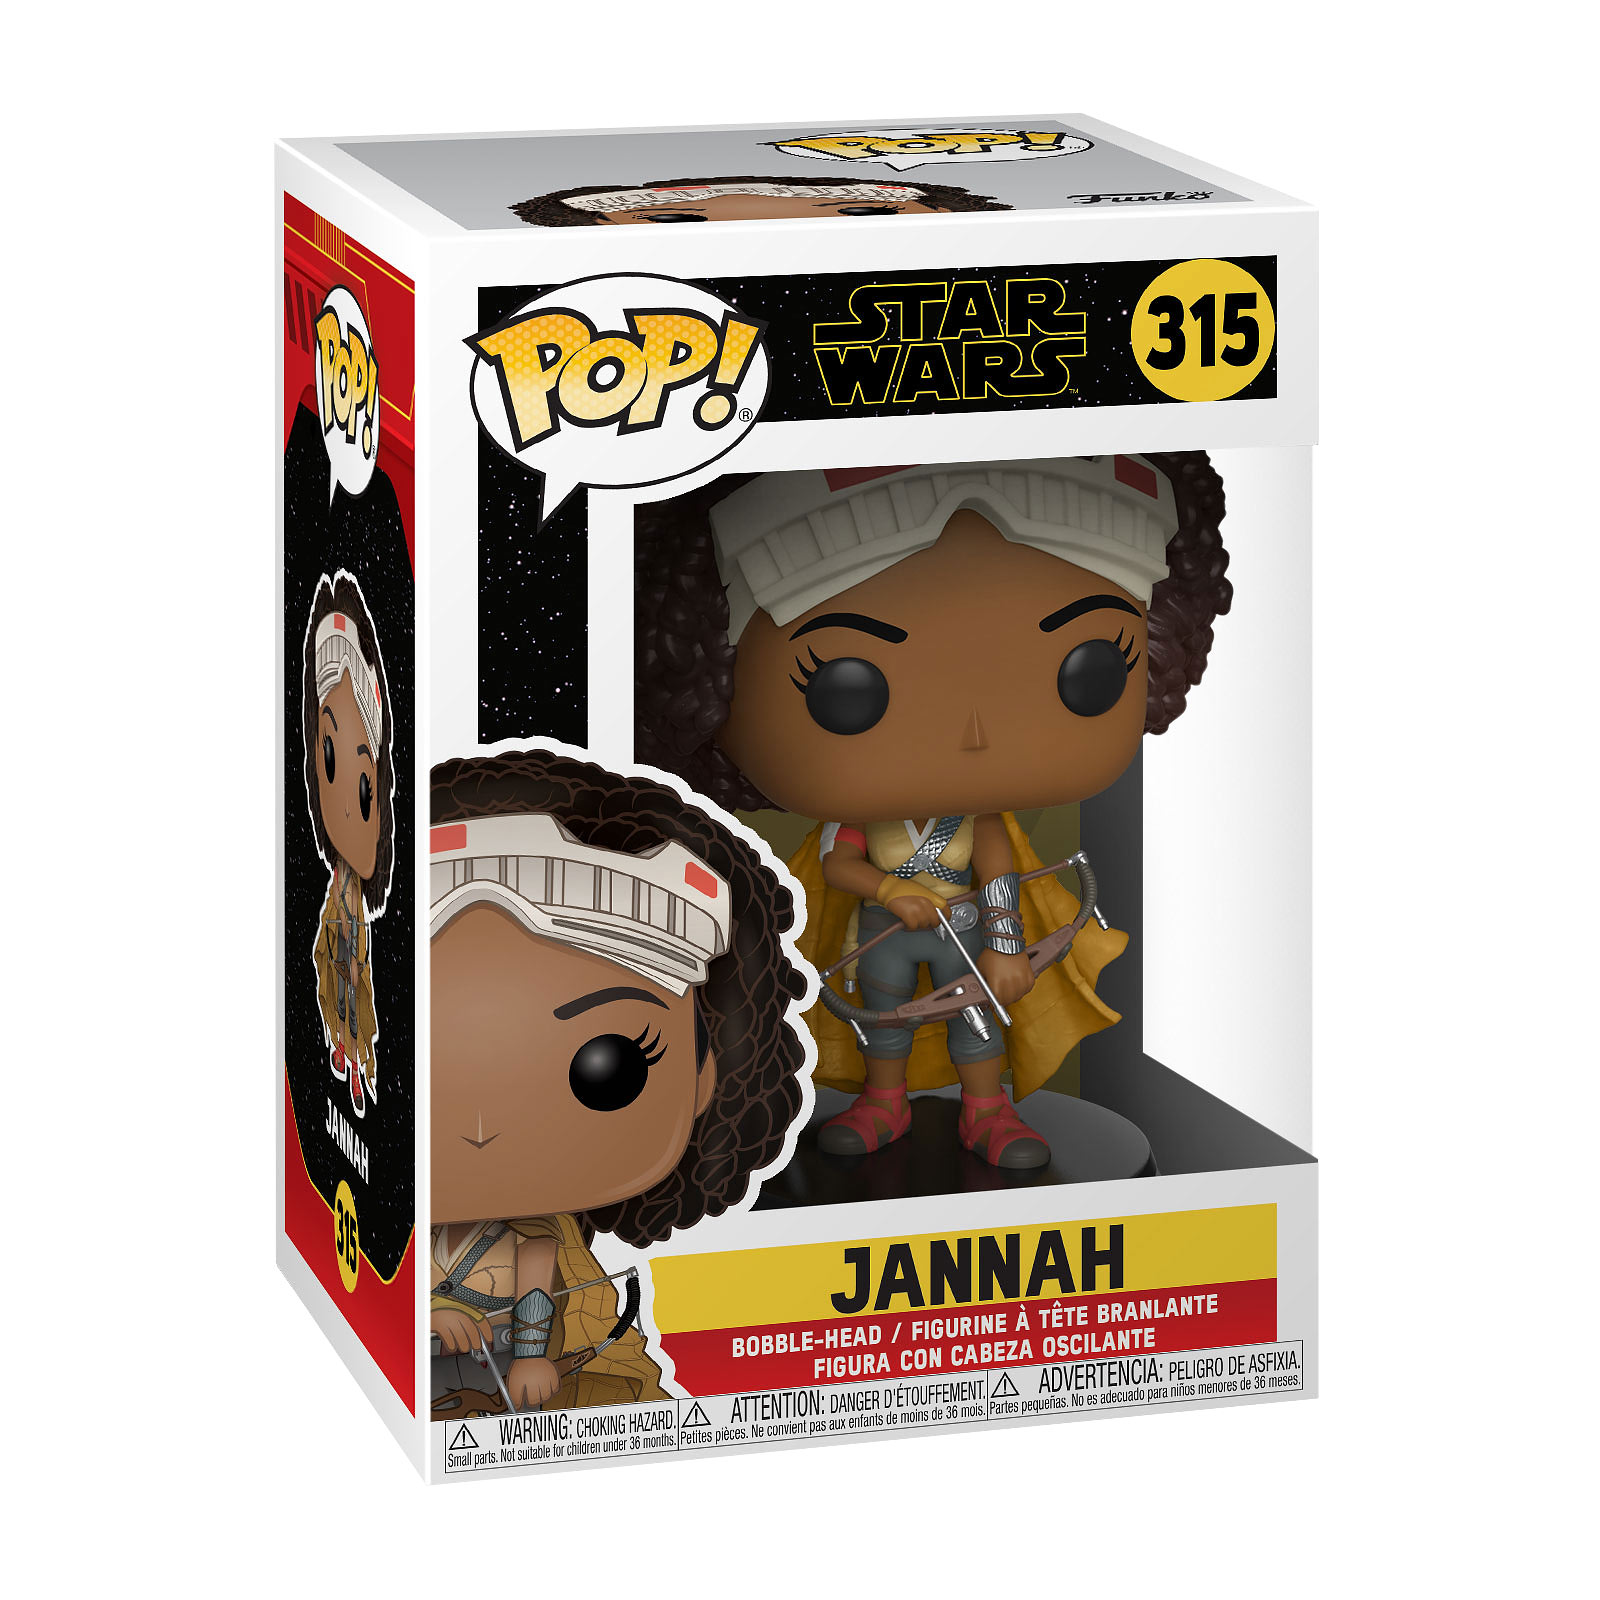 Star Wars - Jannah Funko Pop bobblehead figure